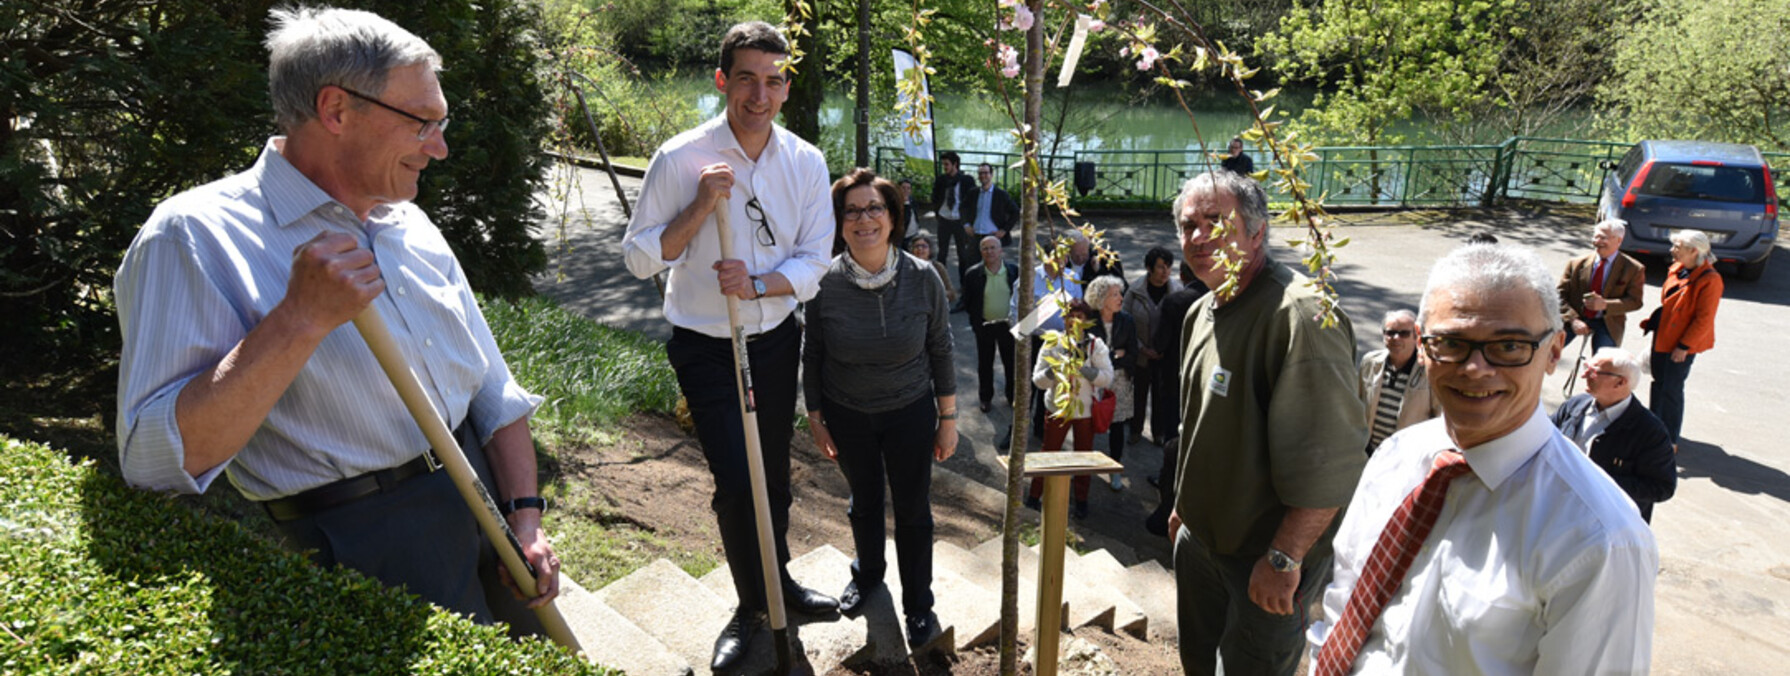 La plantation des 4 derniers arbres s'est déroulée vendredi 7 avril 2017, en présence des présidents des Lions Club niortais et du maire, Jérôme Baloge ©Bruno Derbord